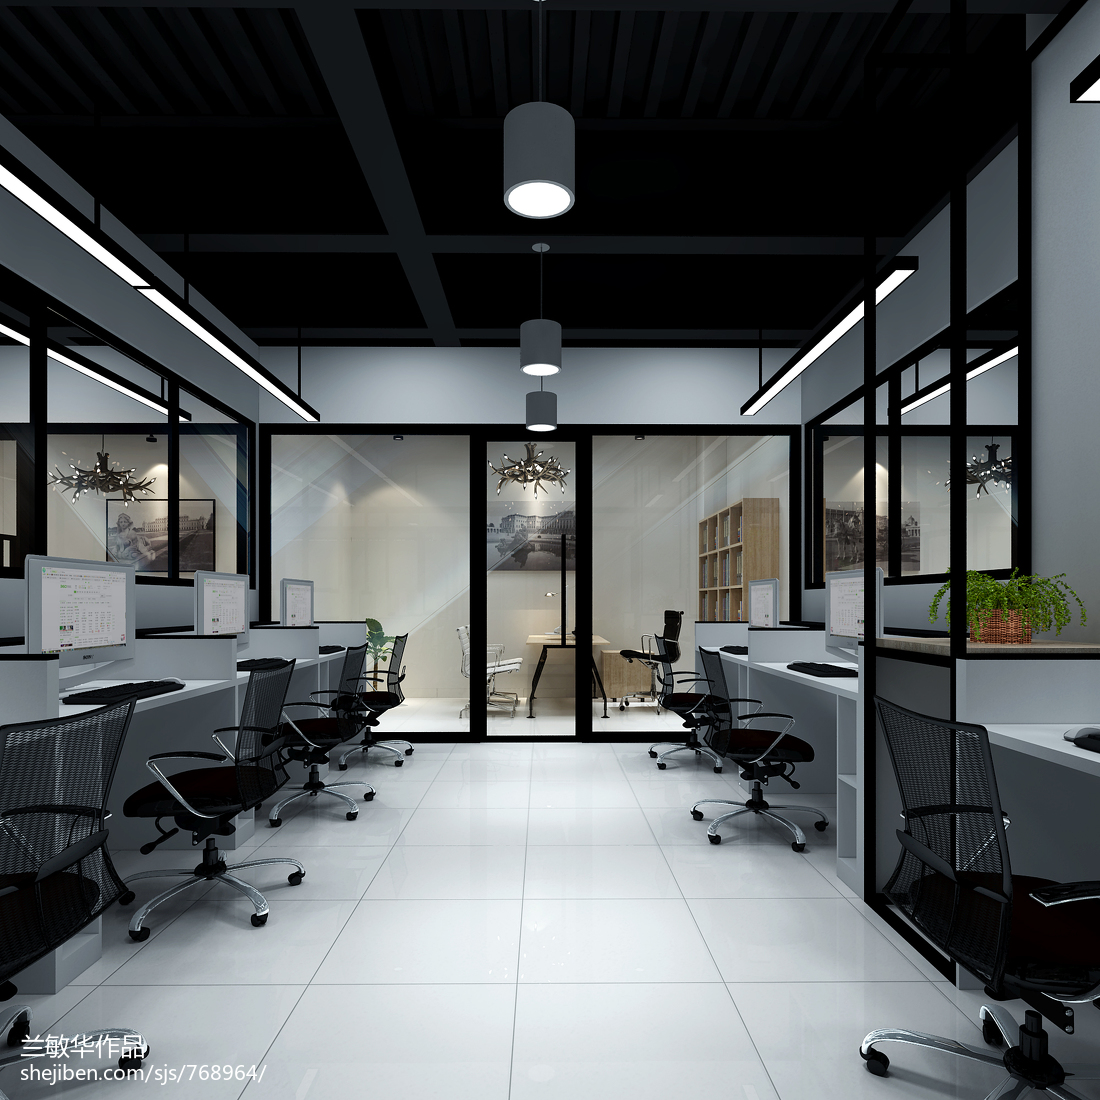 AIX——孵化器办公室室内装饰设计空间设计_1461511